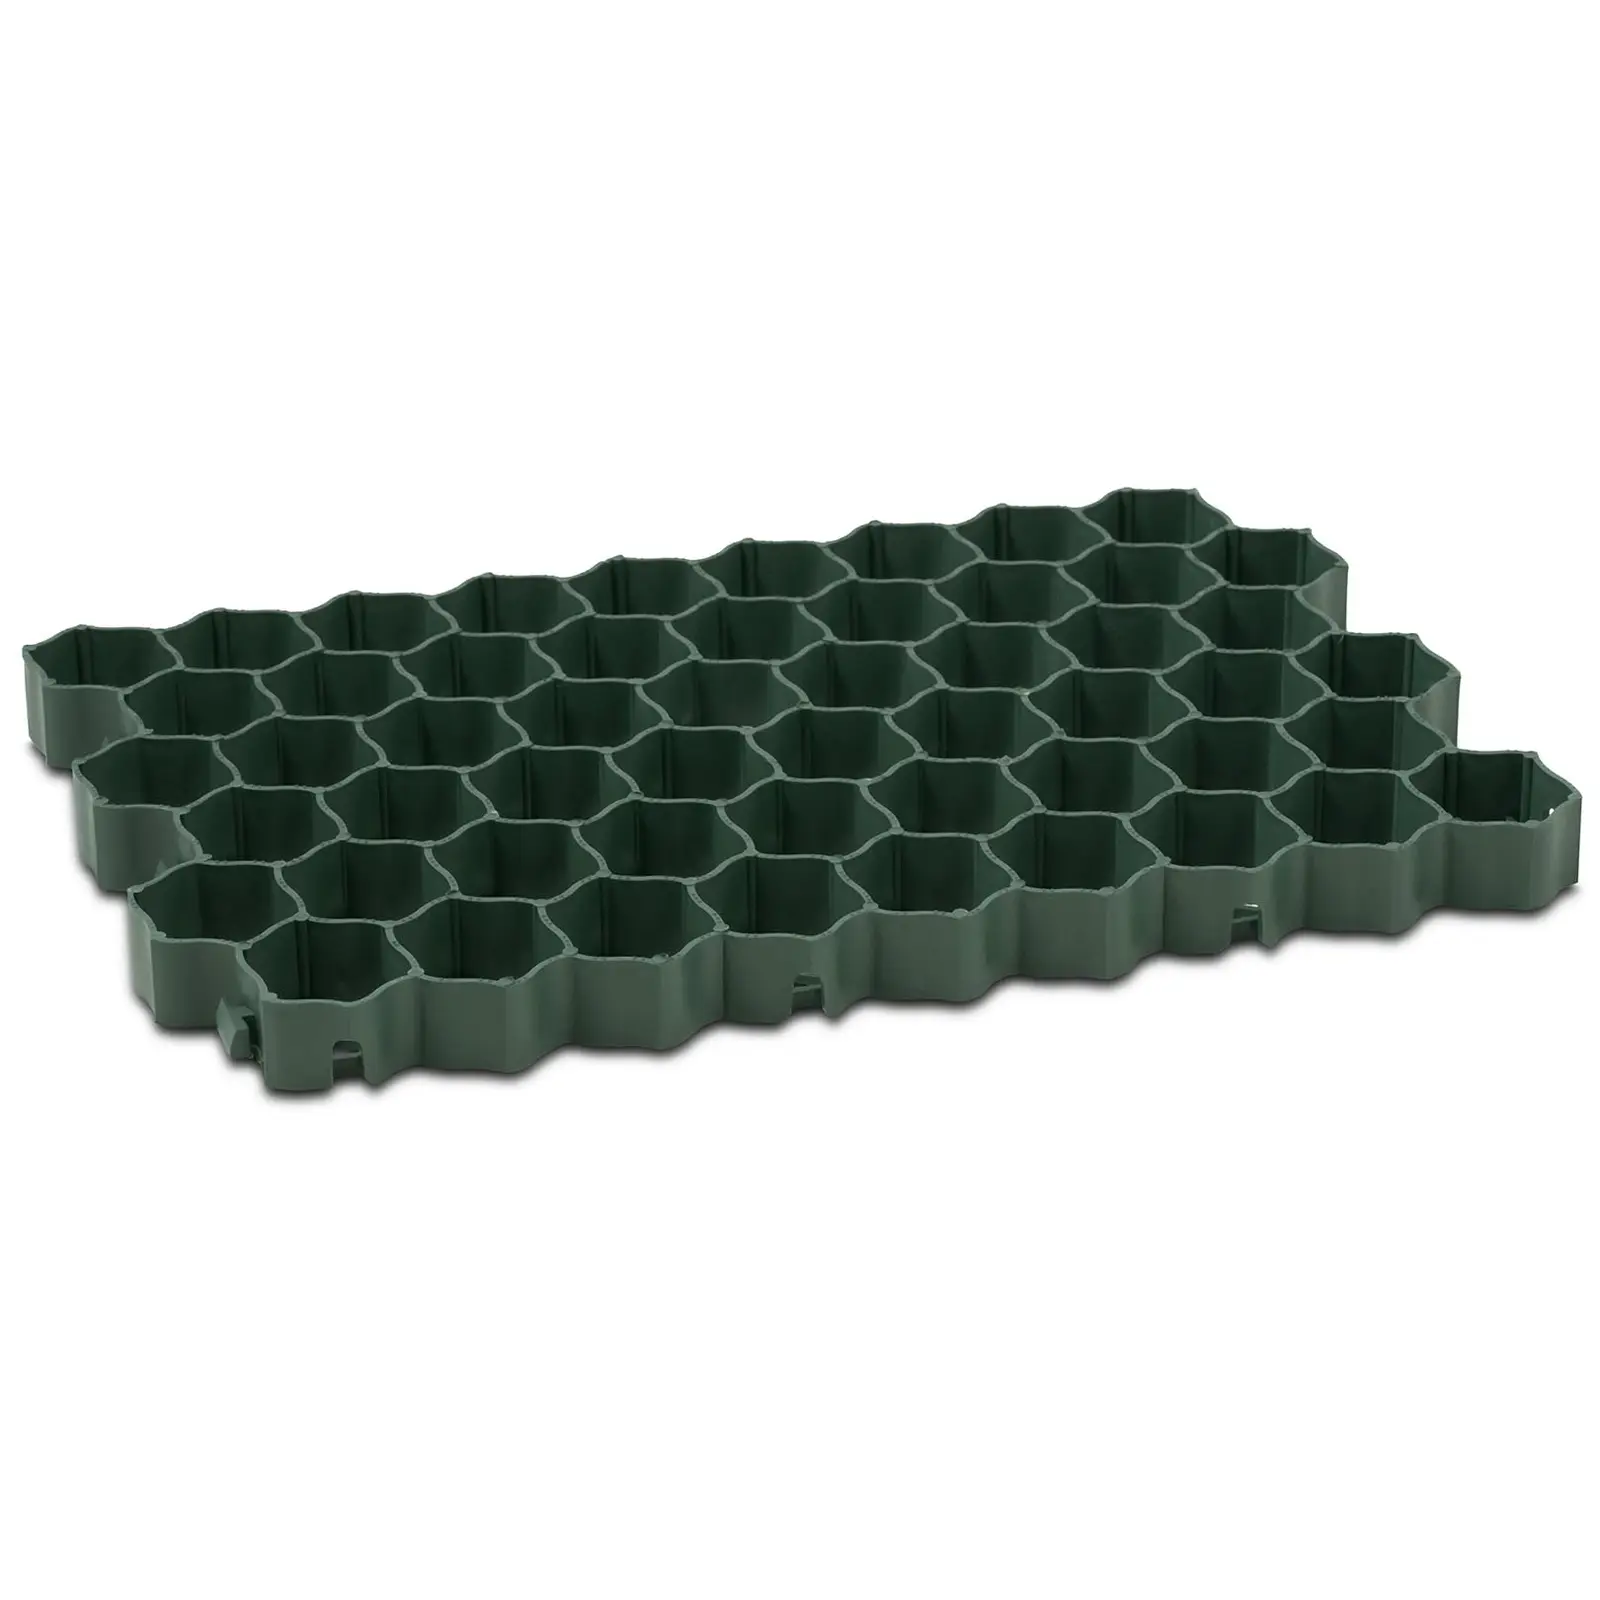 Grigliato carrabile - 60 x 40 x 4 cm - 4 pezzi - verde